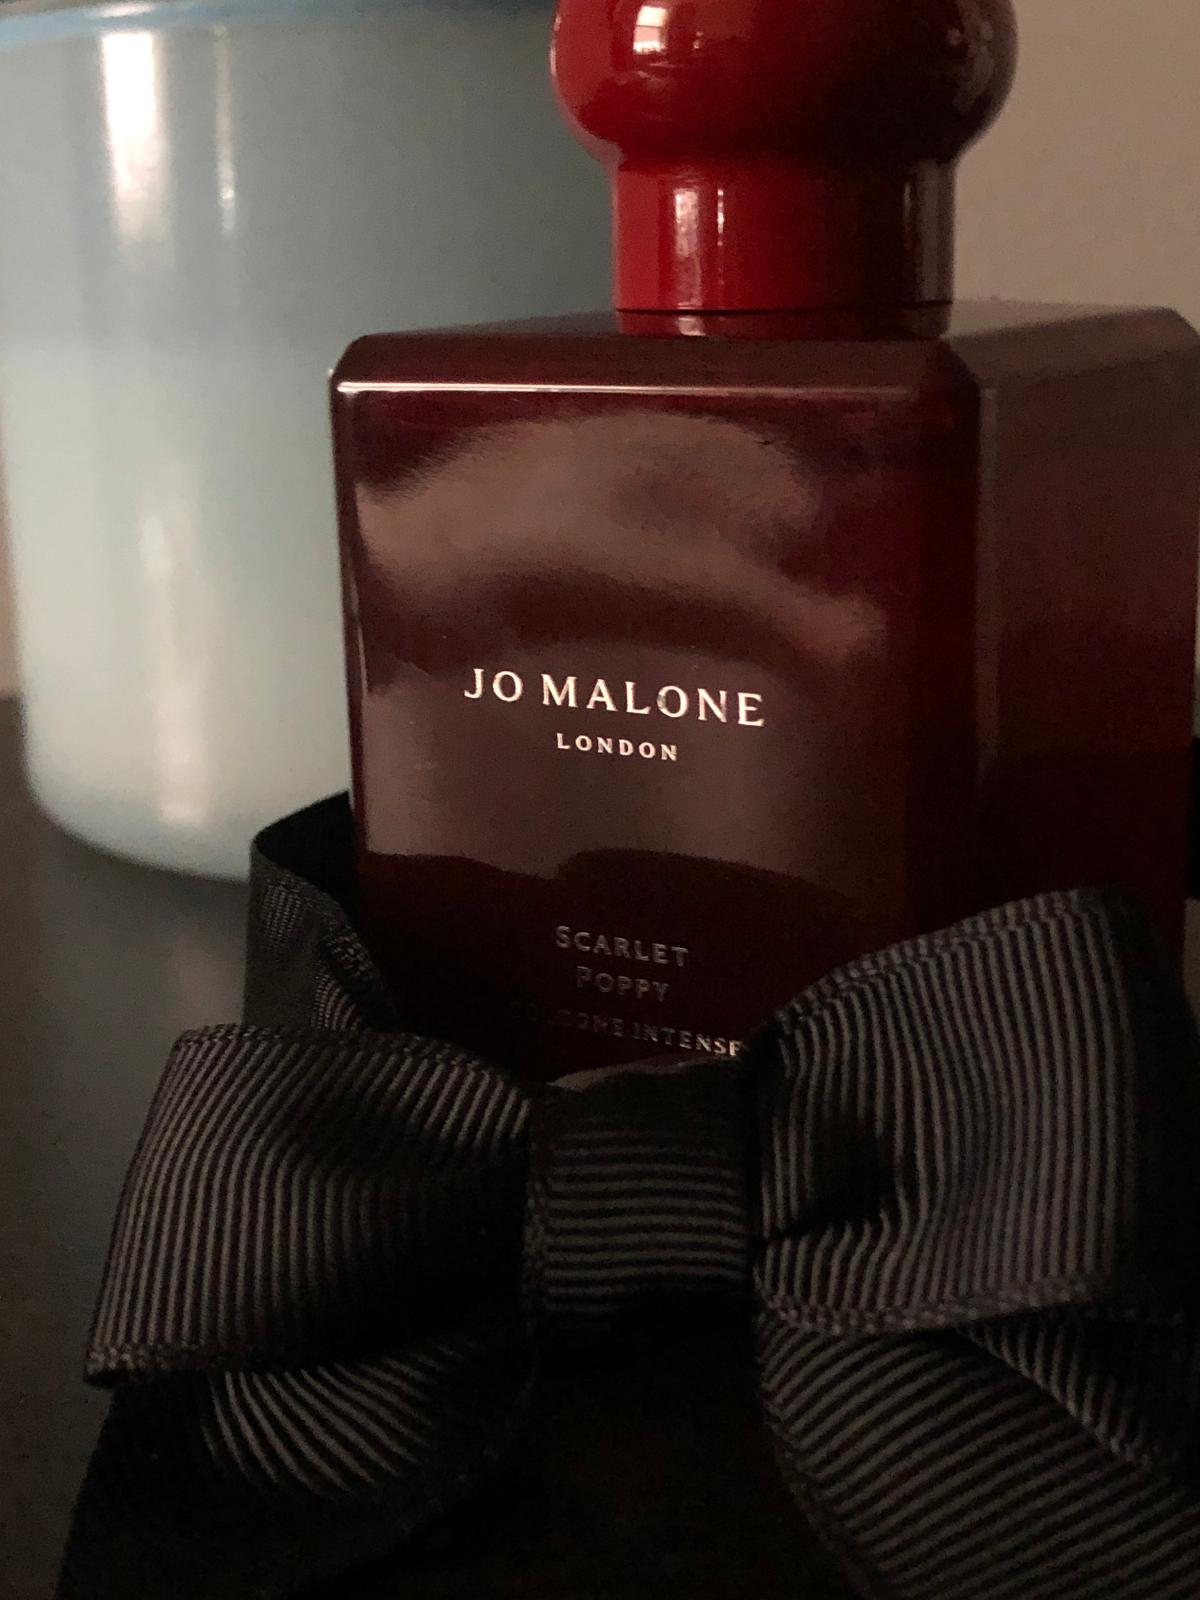 Scarlet Poppy Intense Jo Malone London perfume - a fragrance for women ...